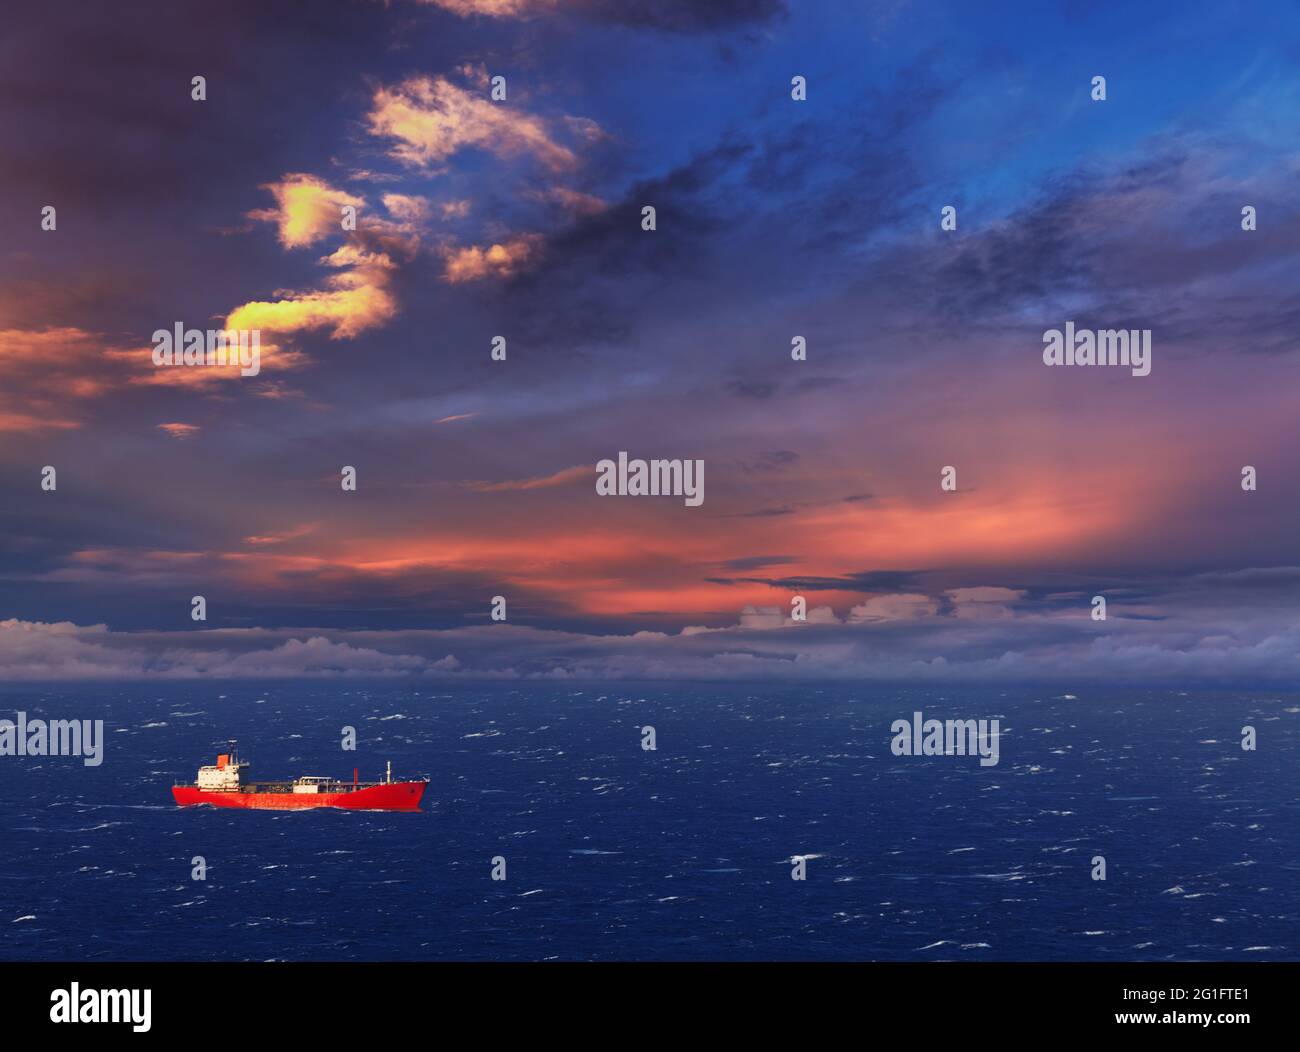 Bateau rouge dans la mer au coucher du soleil Banque D'Images